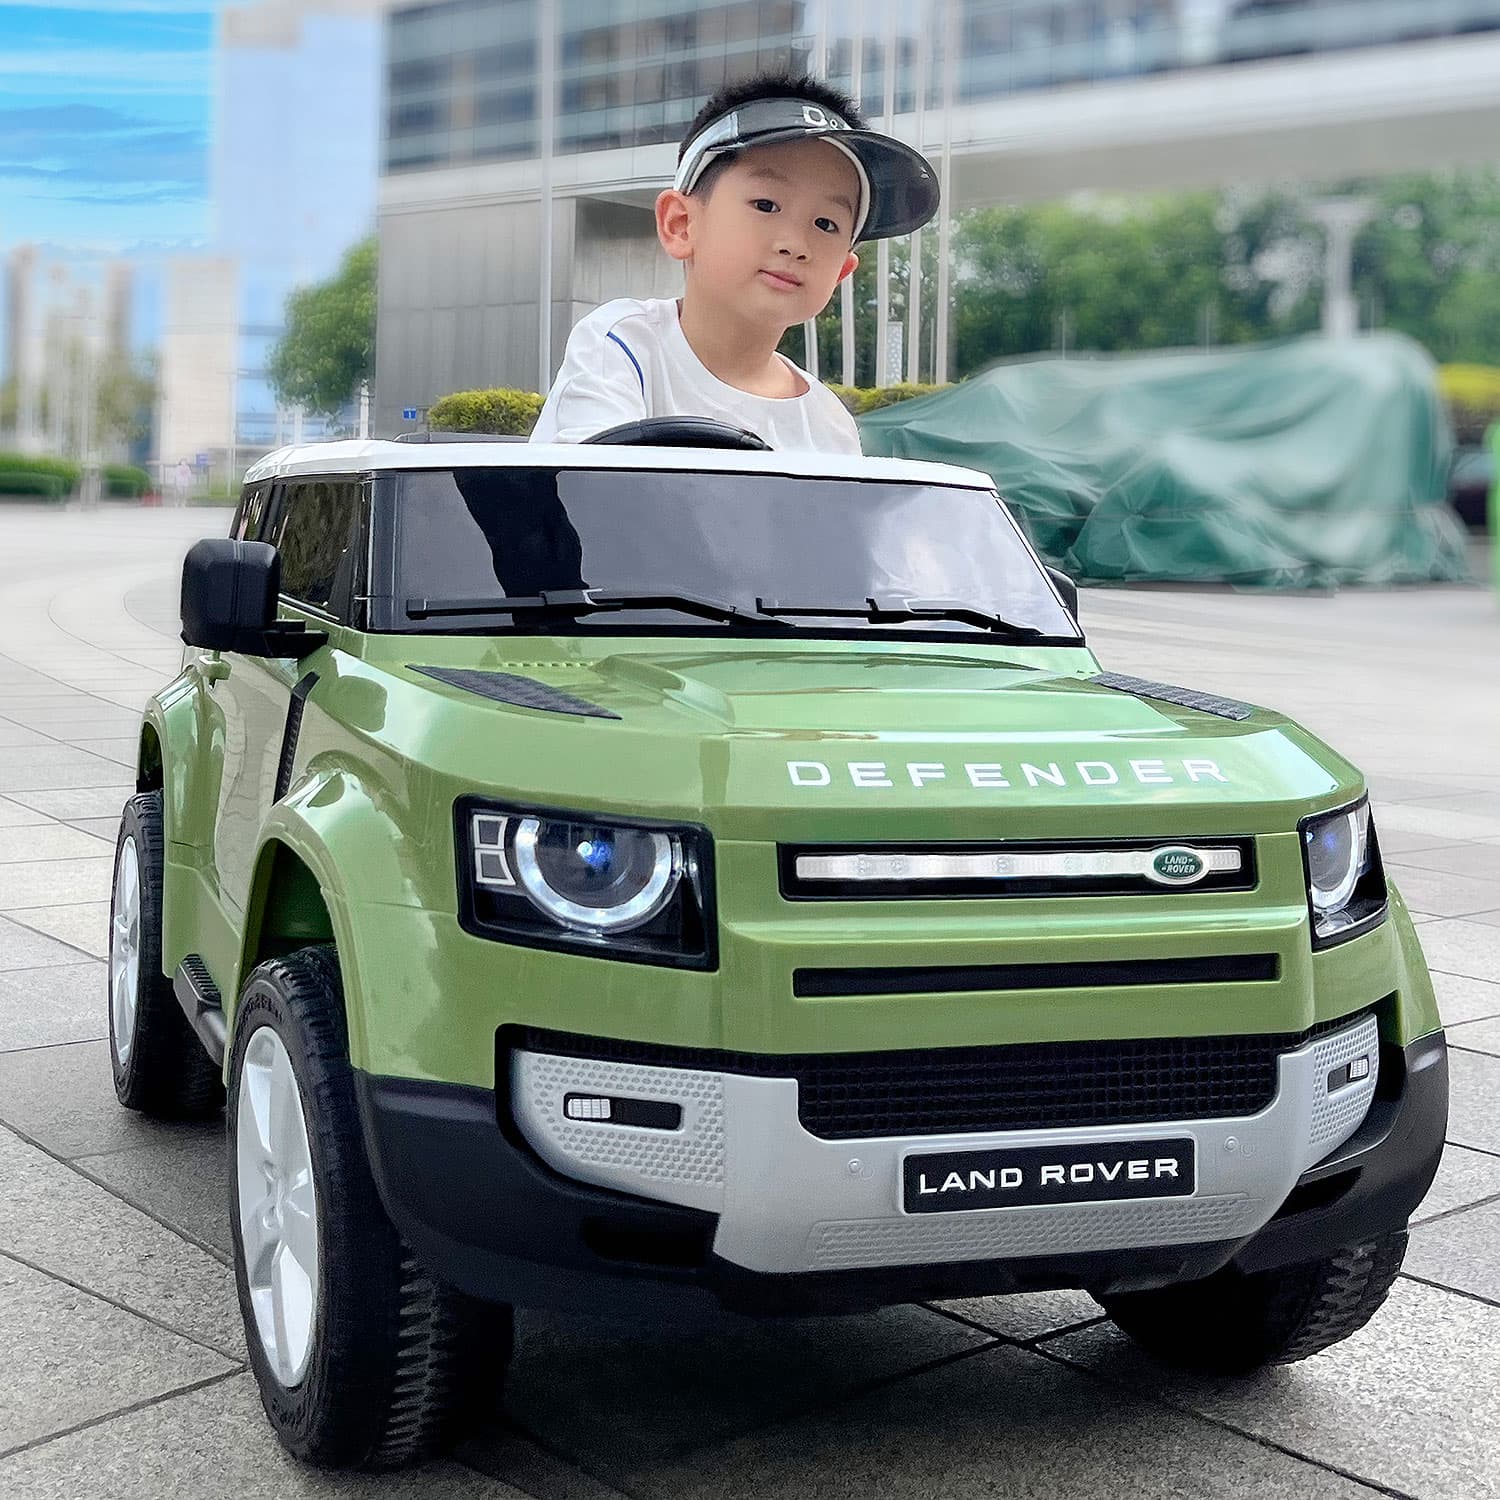 Land Rover Defender 12v Kids Ride-on Car With R/c Parental Remote | Green